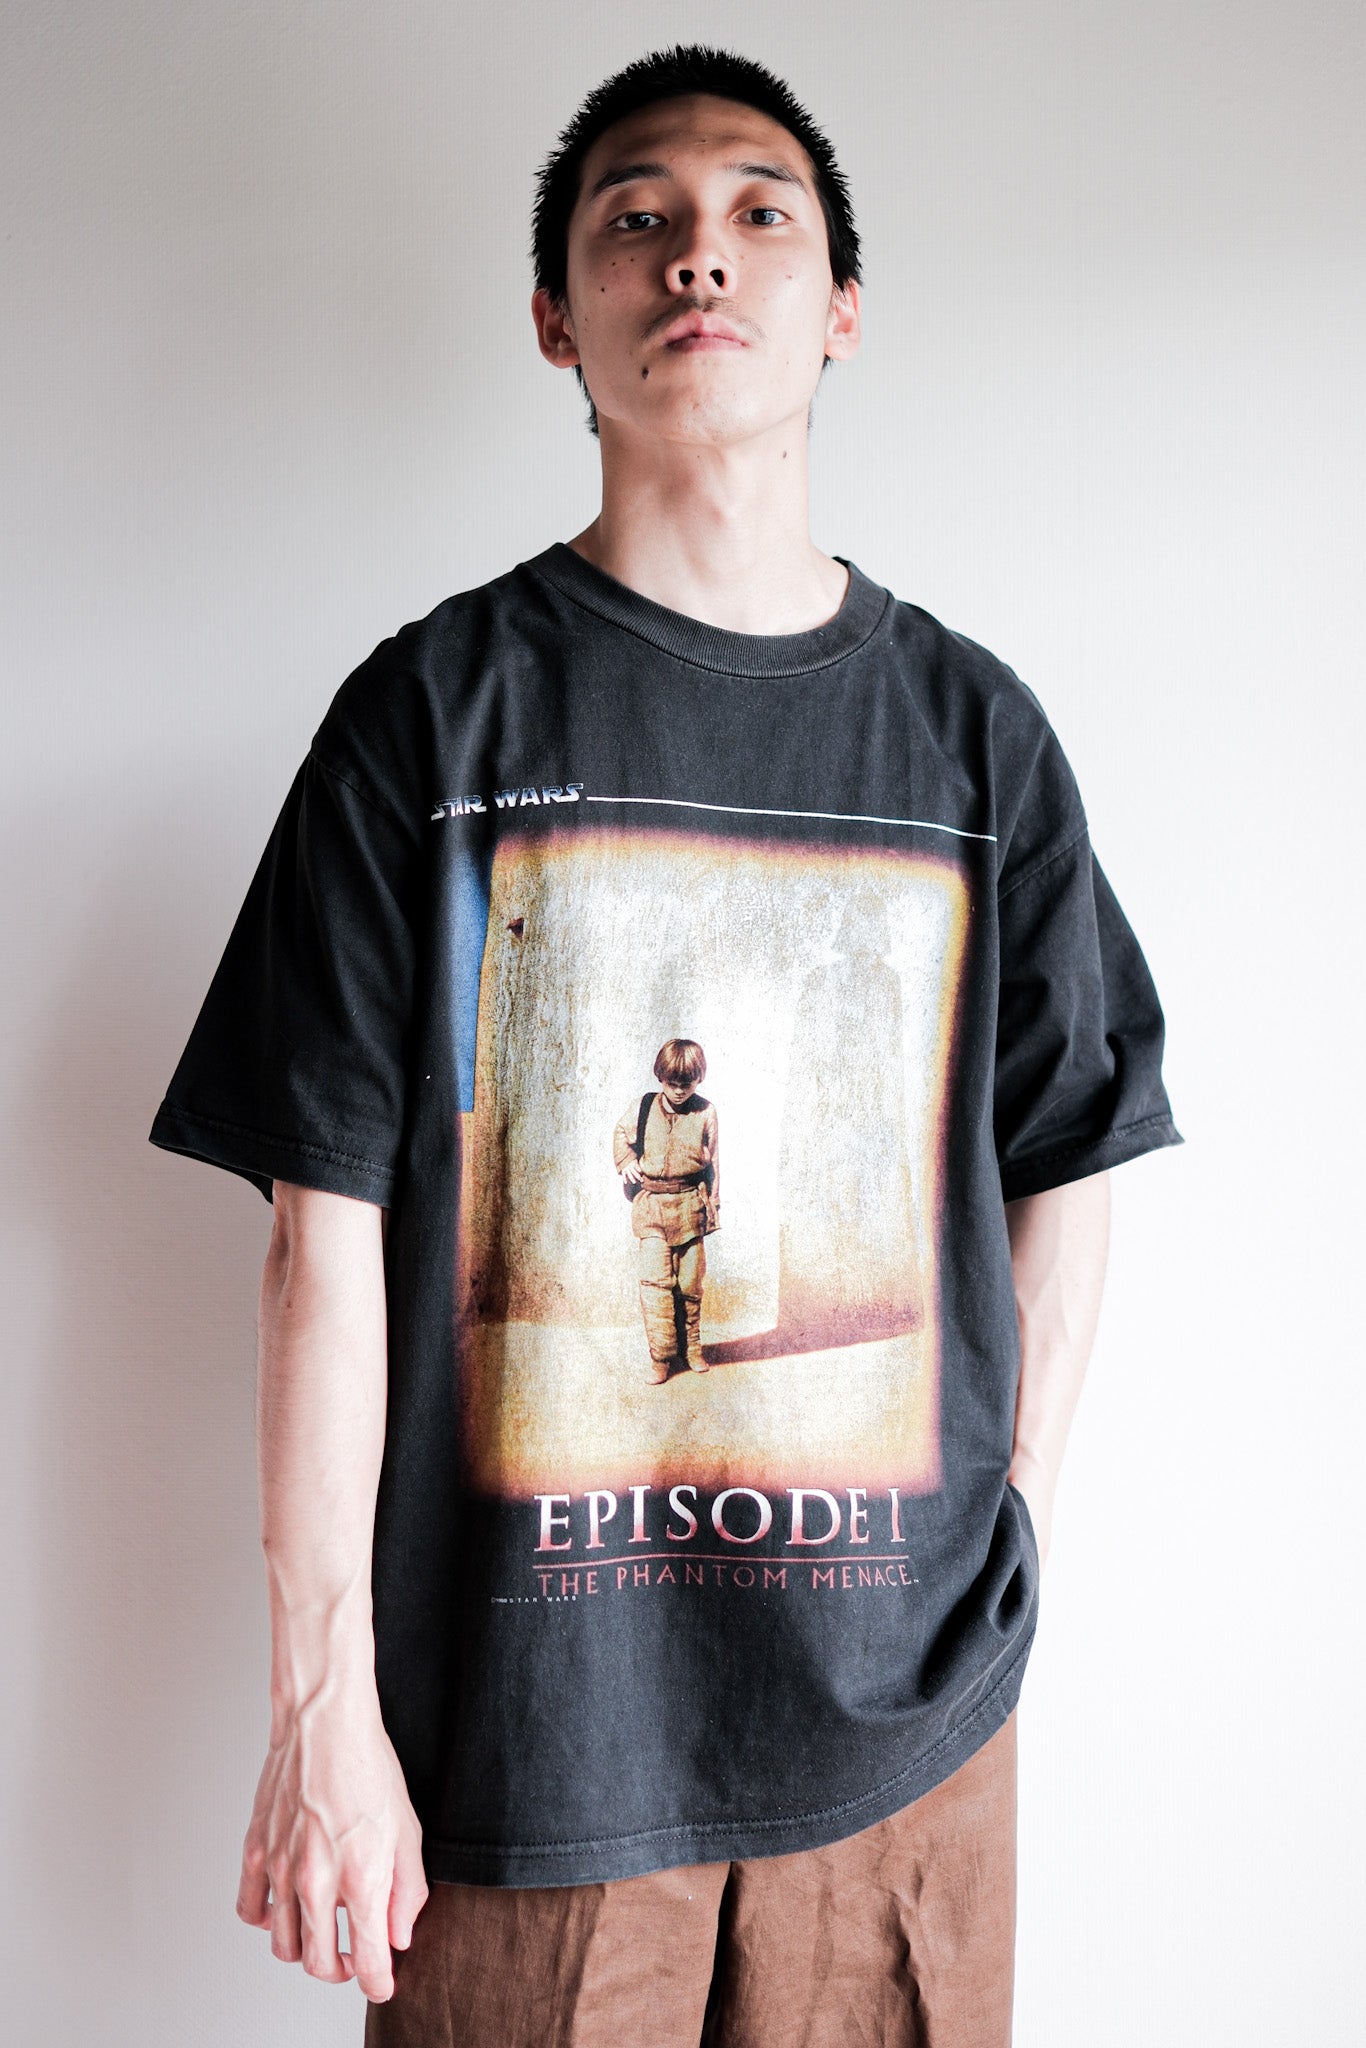 [~ 90 년대] 빈티지 부트 레그 영화 프린트 티셔츠 "스타 워즈 에피소드 I"